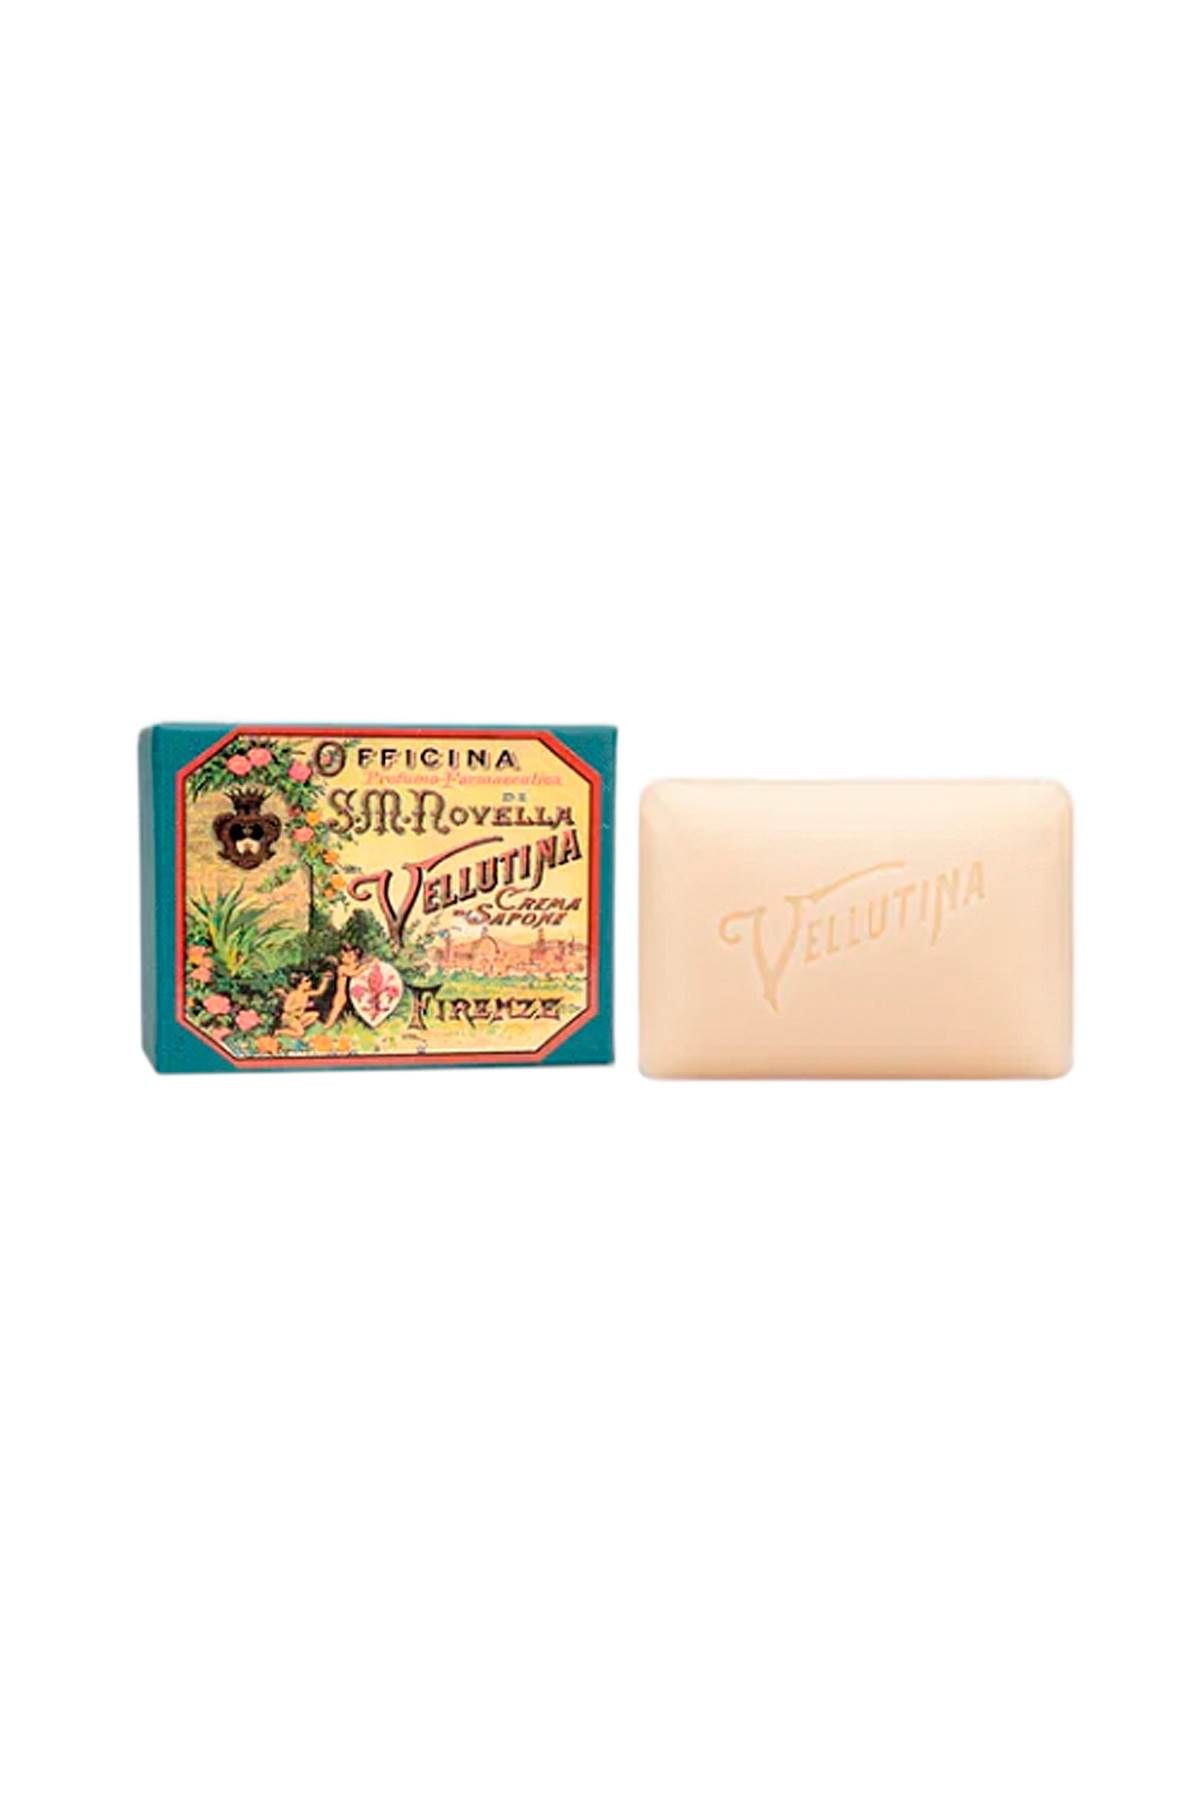 OFFICINA PROFUMO FARMACEUTICA DI S. M.NOV vellutina soap - 150g